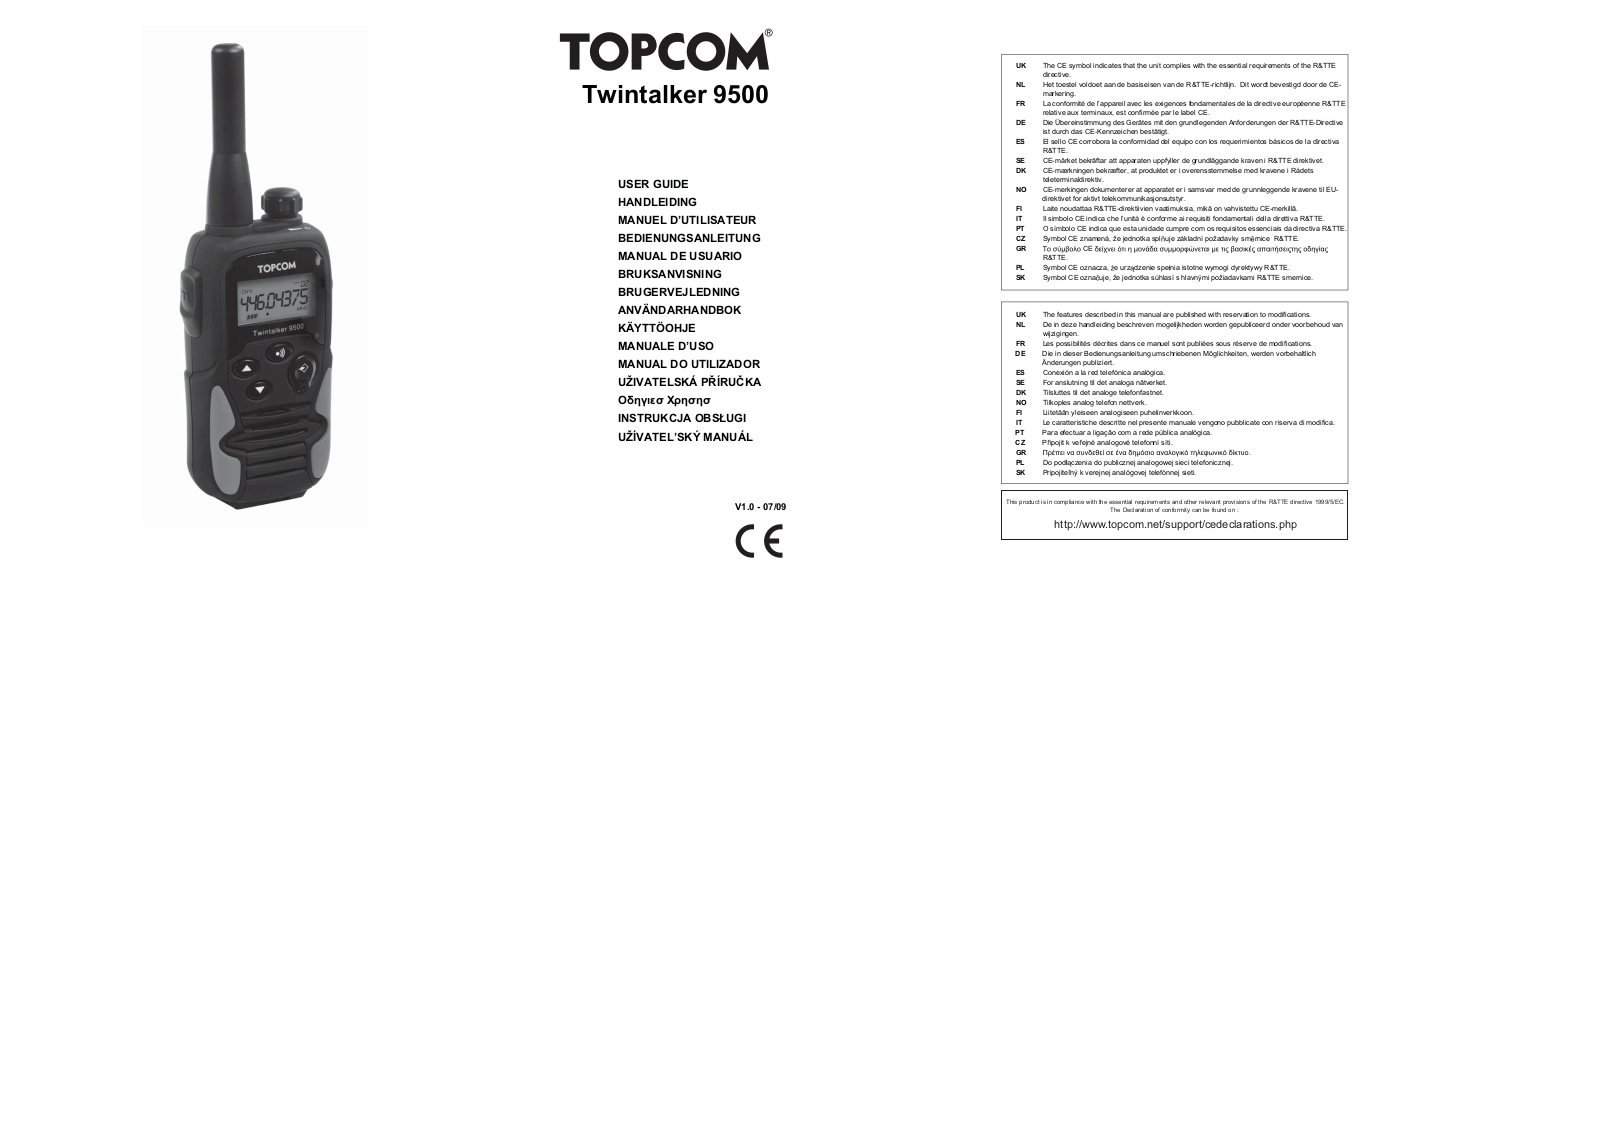 TOPCOM PMR TT9500, TWINTALKER 9500 User Manual